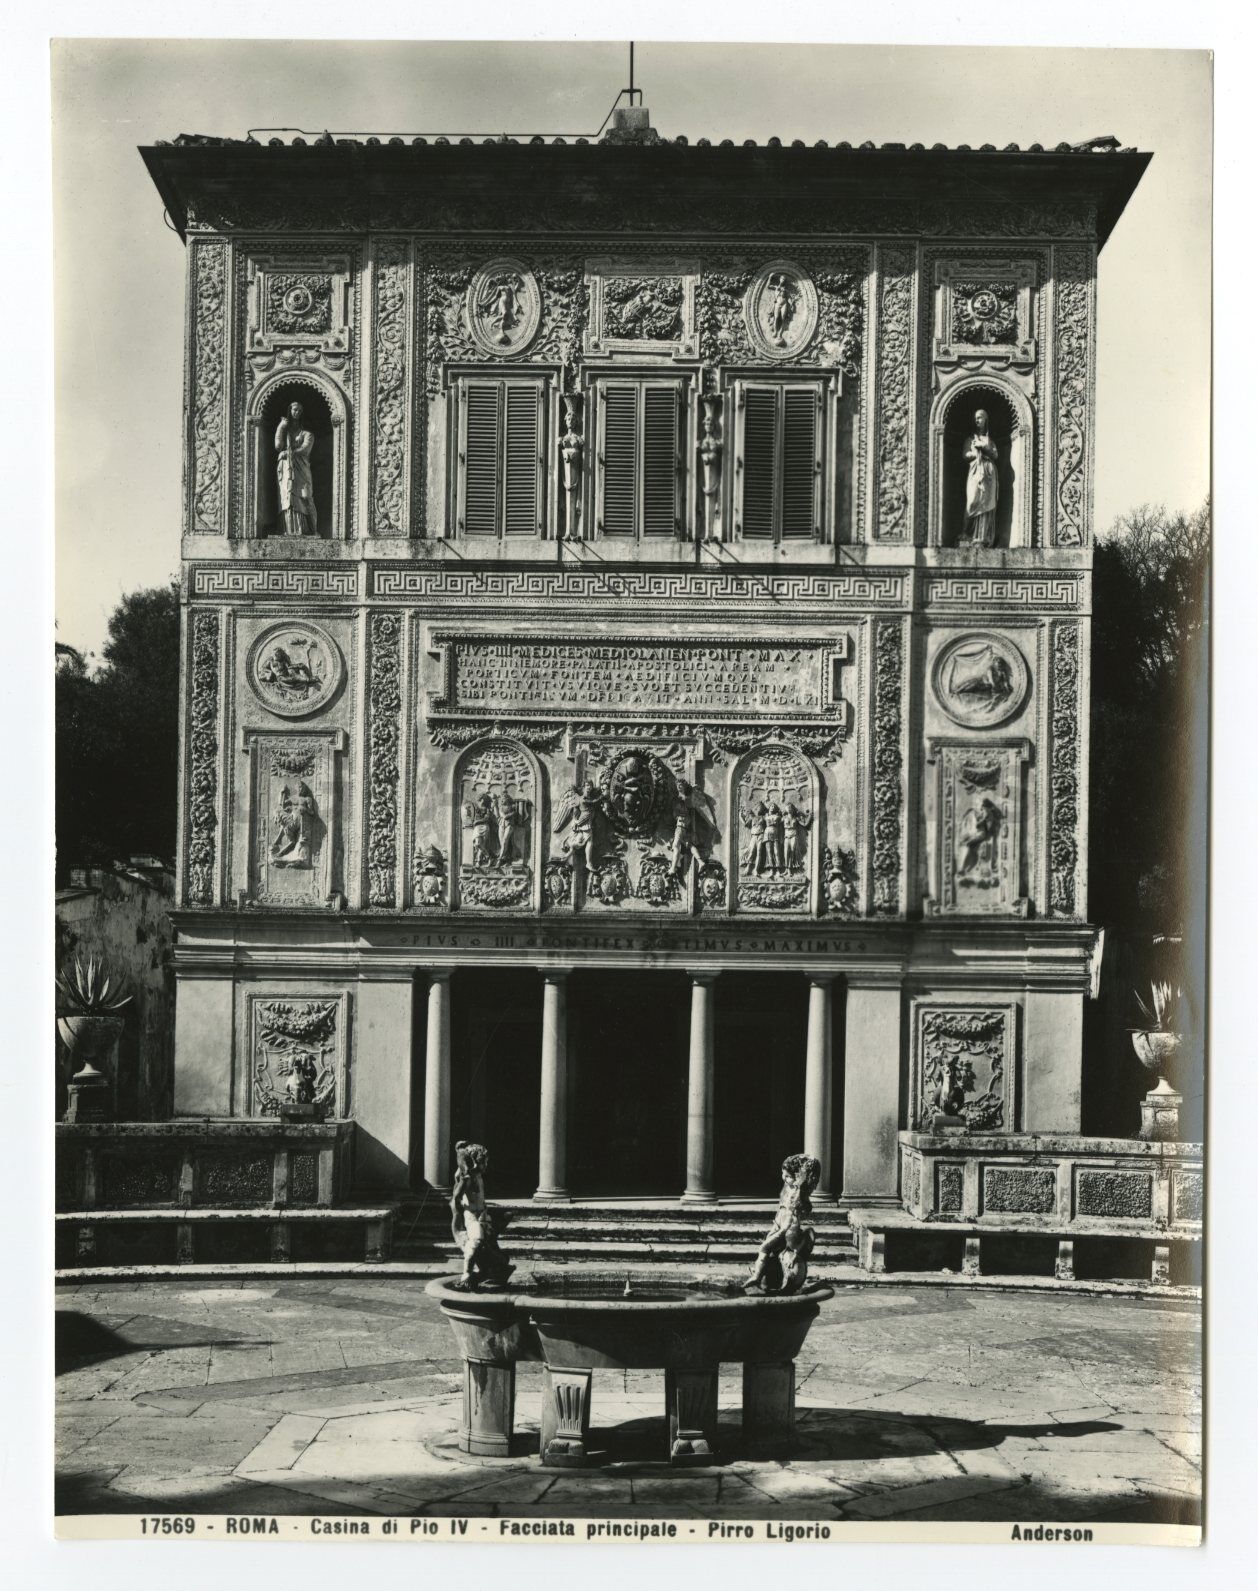 Vatican City - Vintage 8x10 Publication Photo Poster paintinggraph - Casina Pio IV